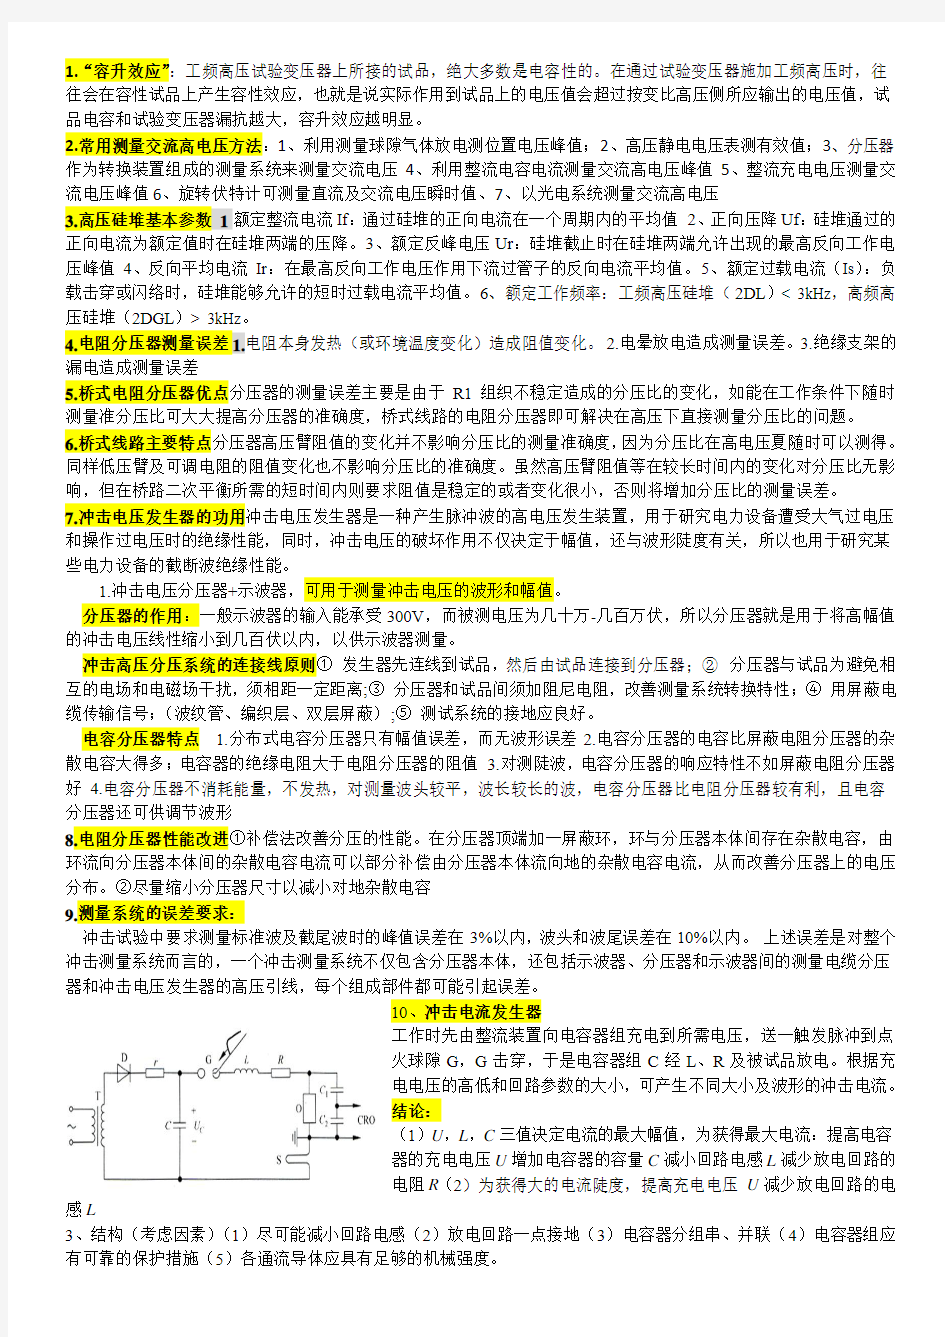 武汉大学电气高电压试验技术总结